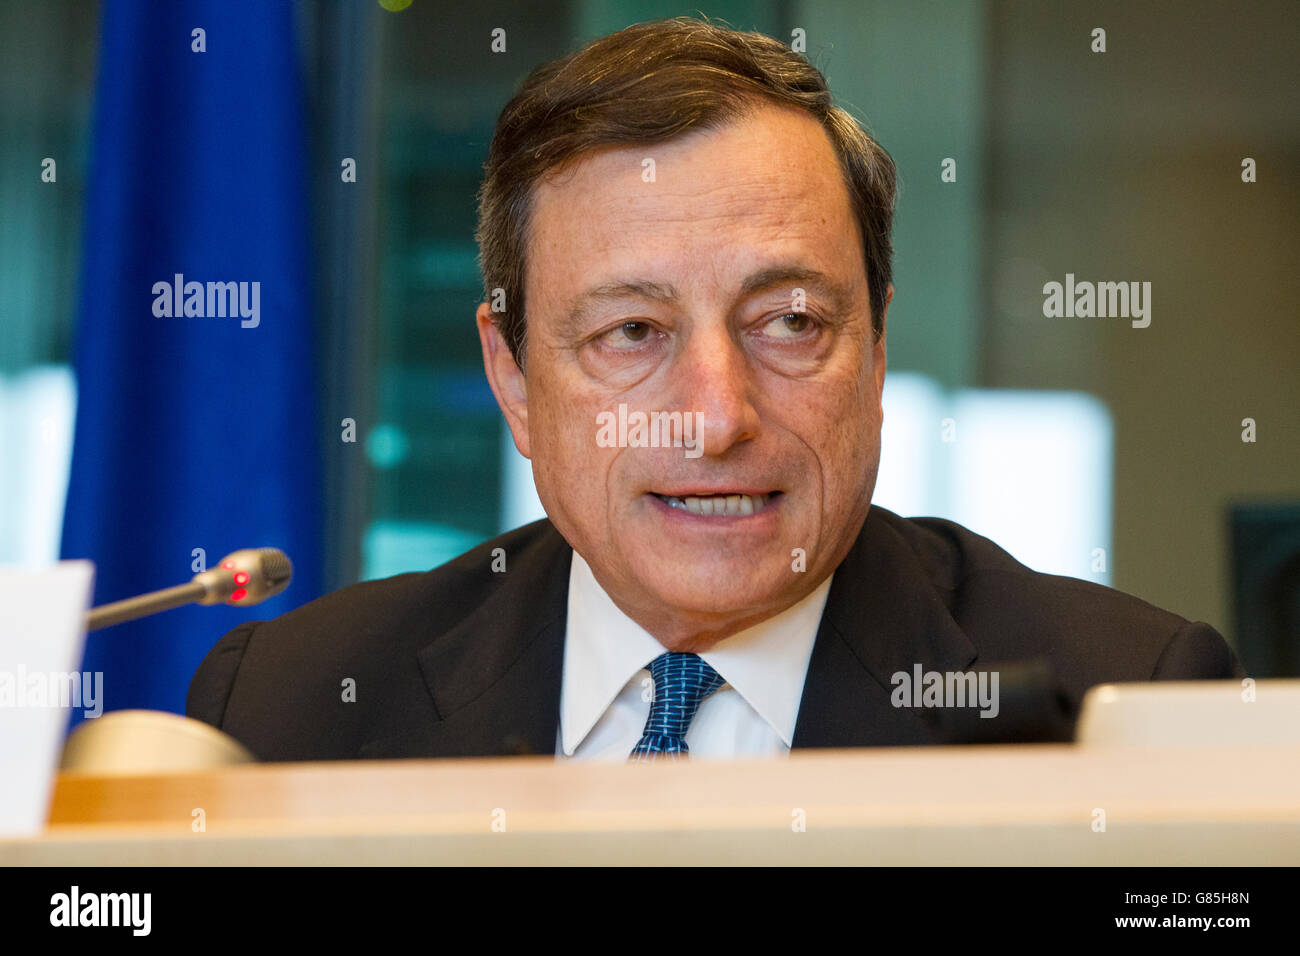 Mario draghi former president european central bank Stock Photo